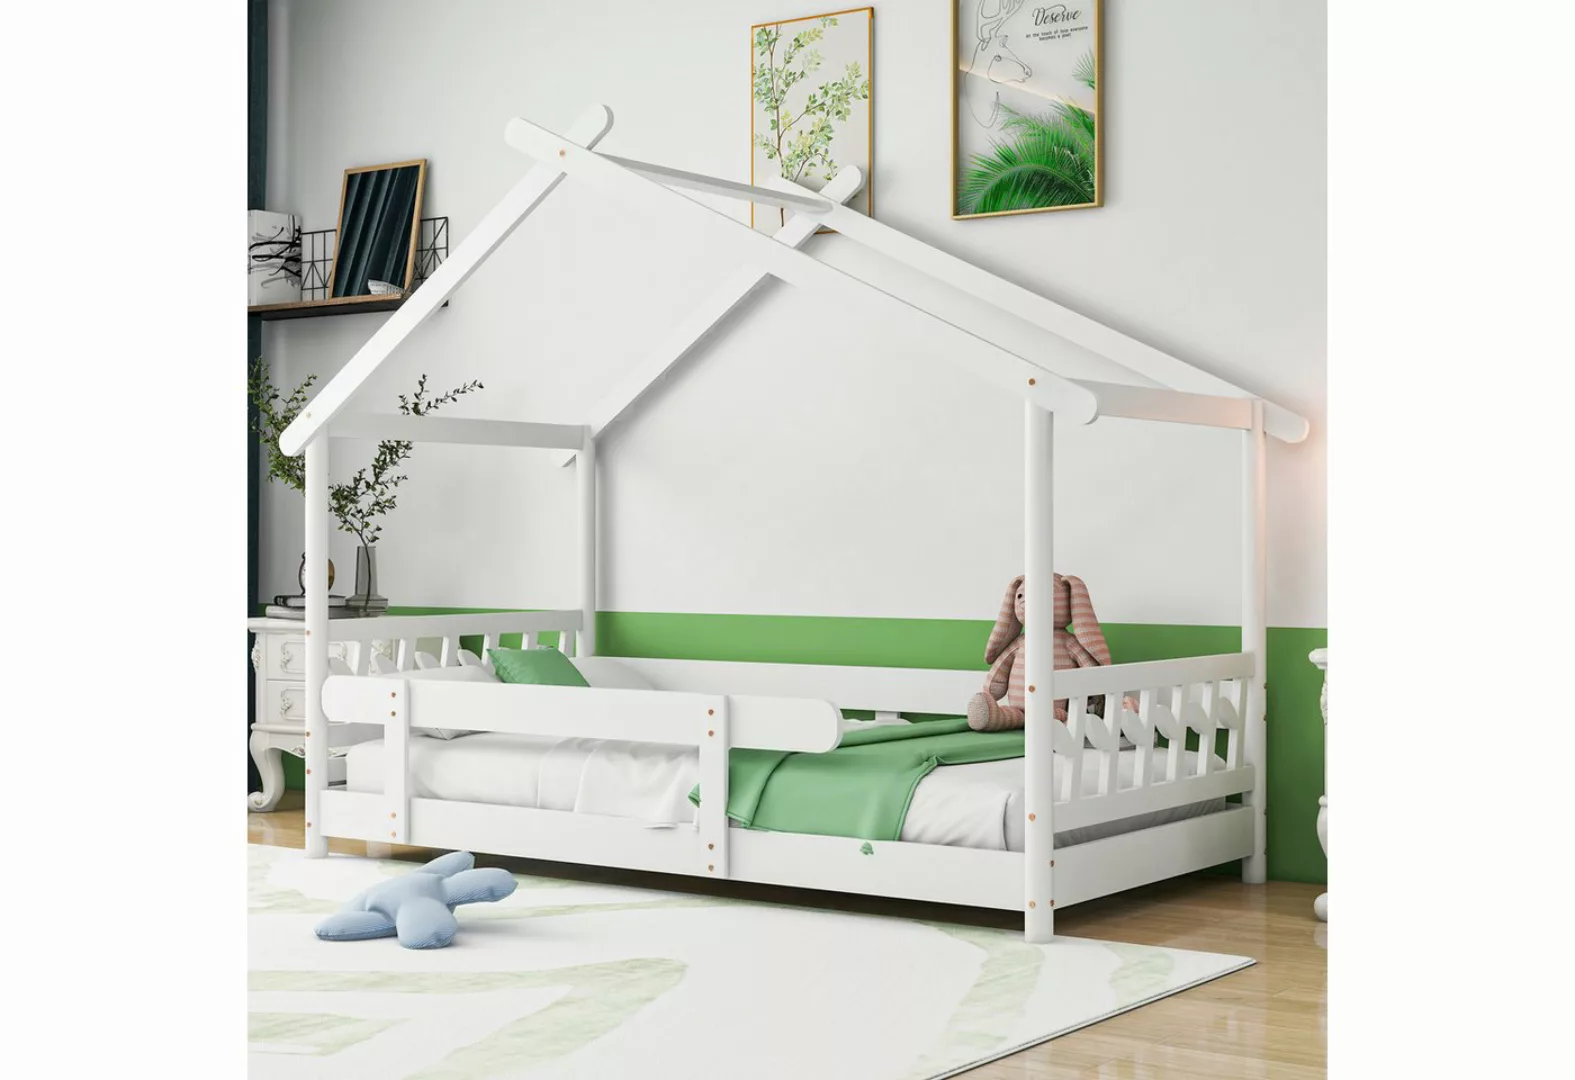 Flieks Hausbett Dream high, Schönes Kinderbett mit Rausfallschutz 200x90cm günstig online kaufen